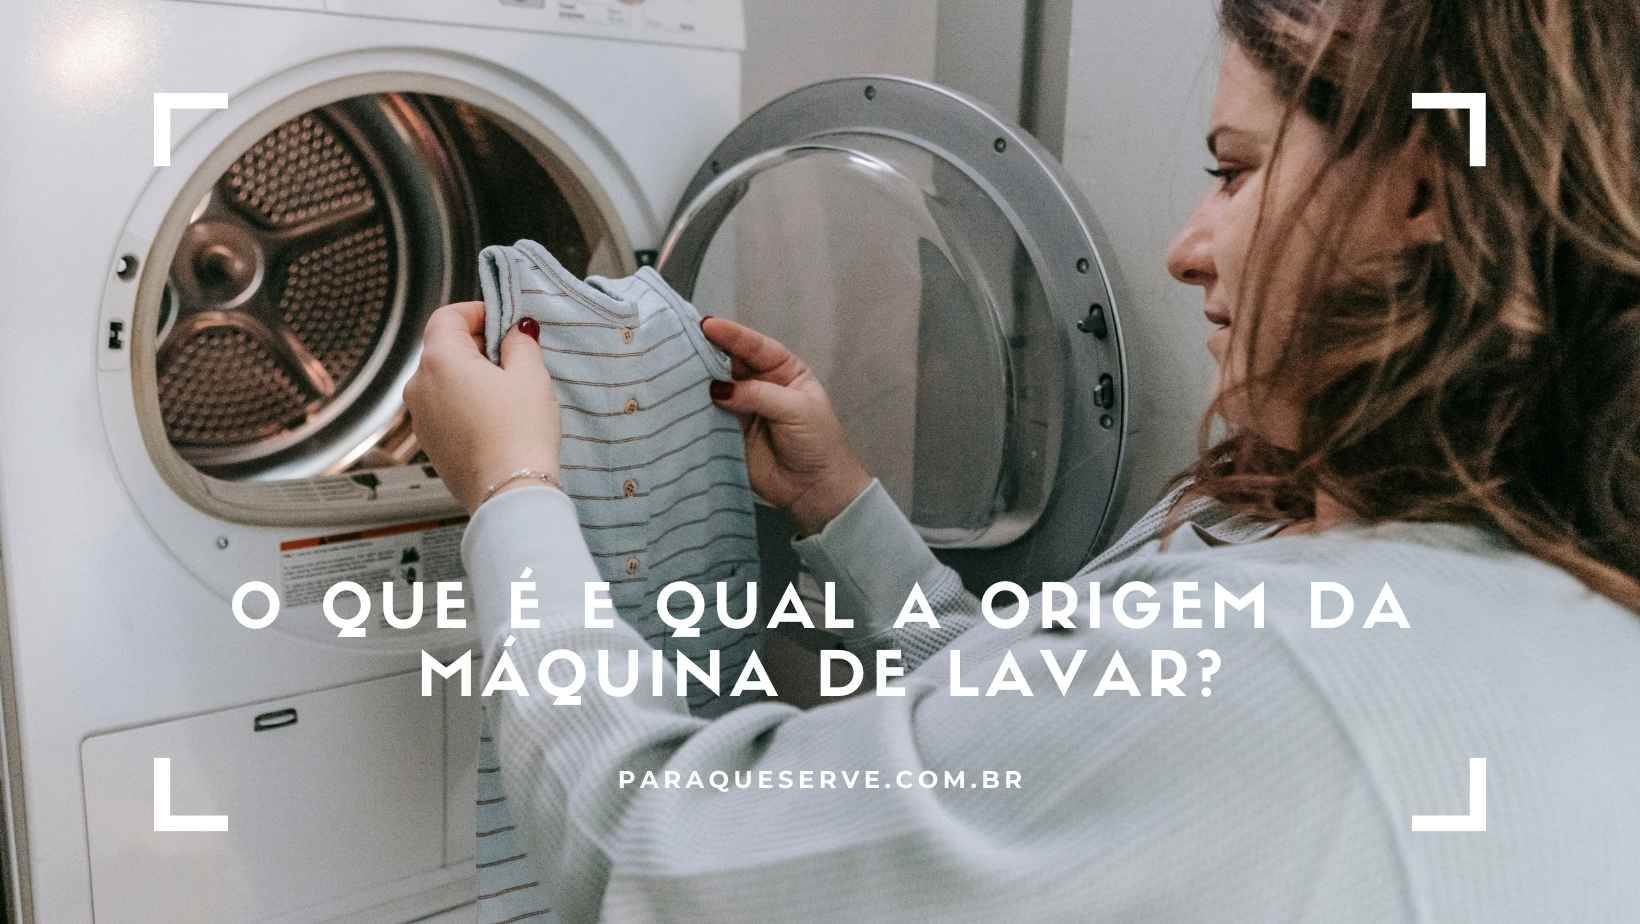 O que é e qual a origem da máquina de lavar